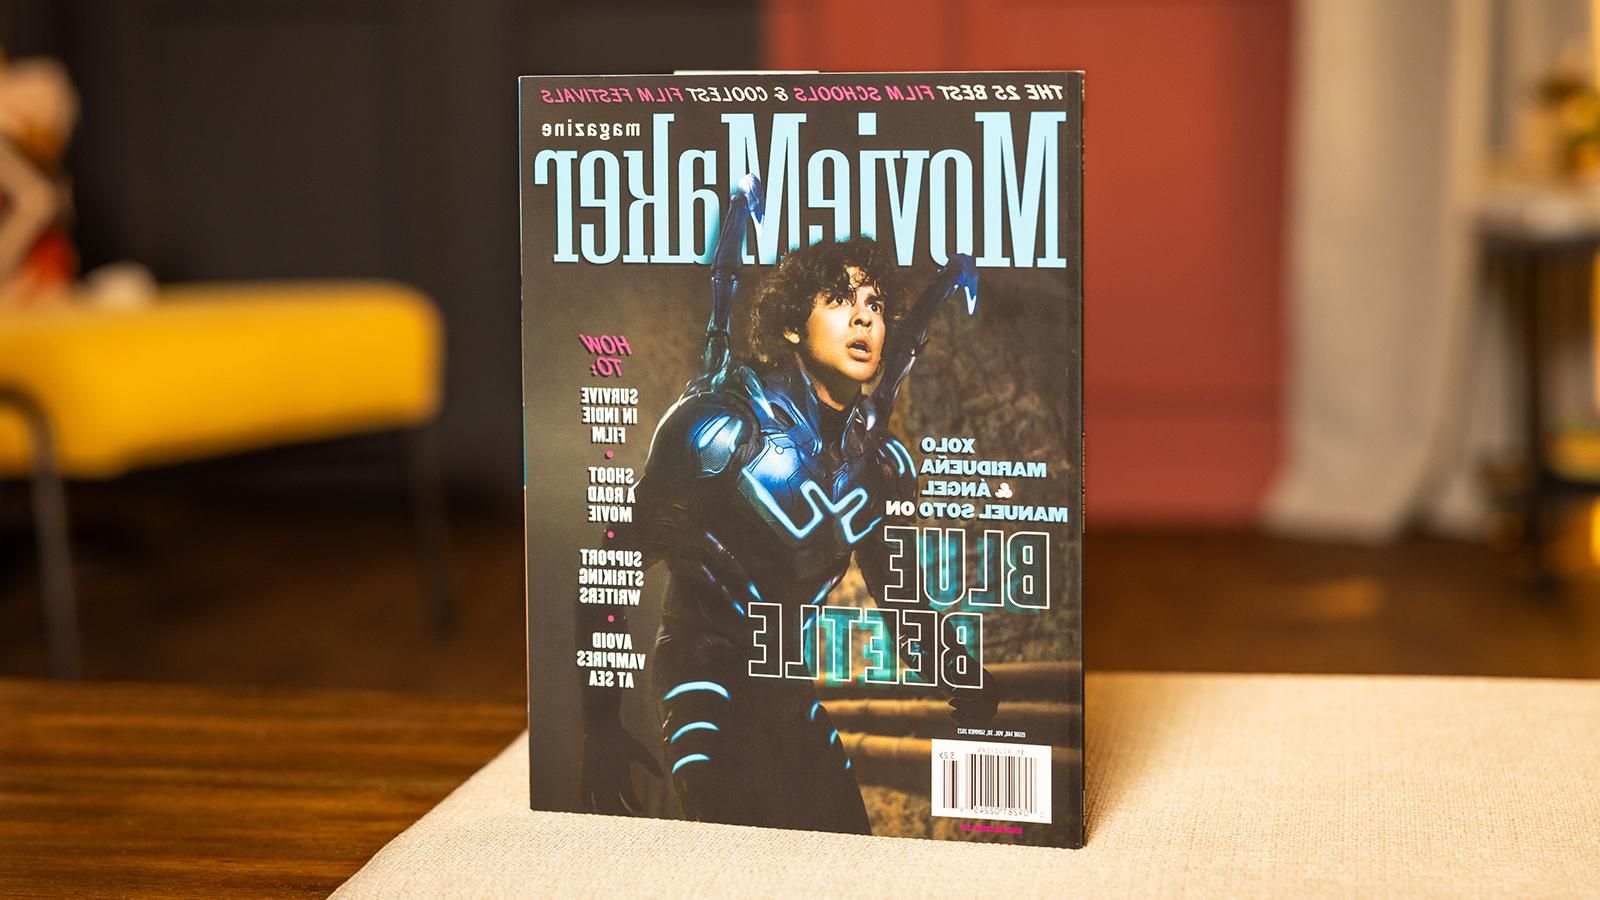 桌上放着一本《电影制作人》杂志. 封面上是一个穿着蓝色甲壳虫服装的演员. 标题是“25所最佳电影学院” & “最酷的电影节”横贯顶部.